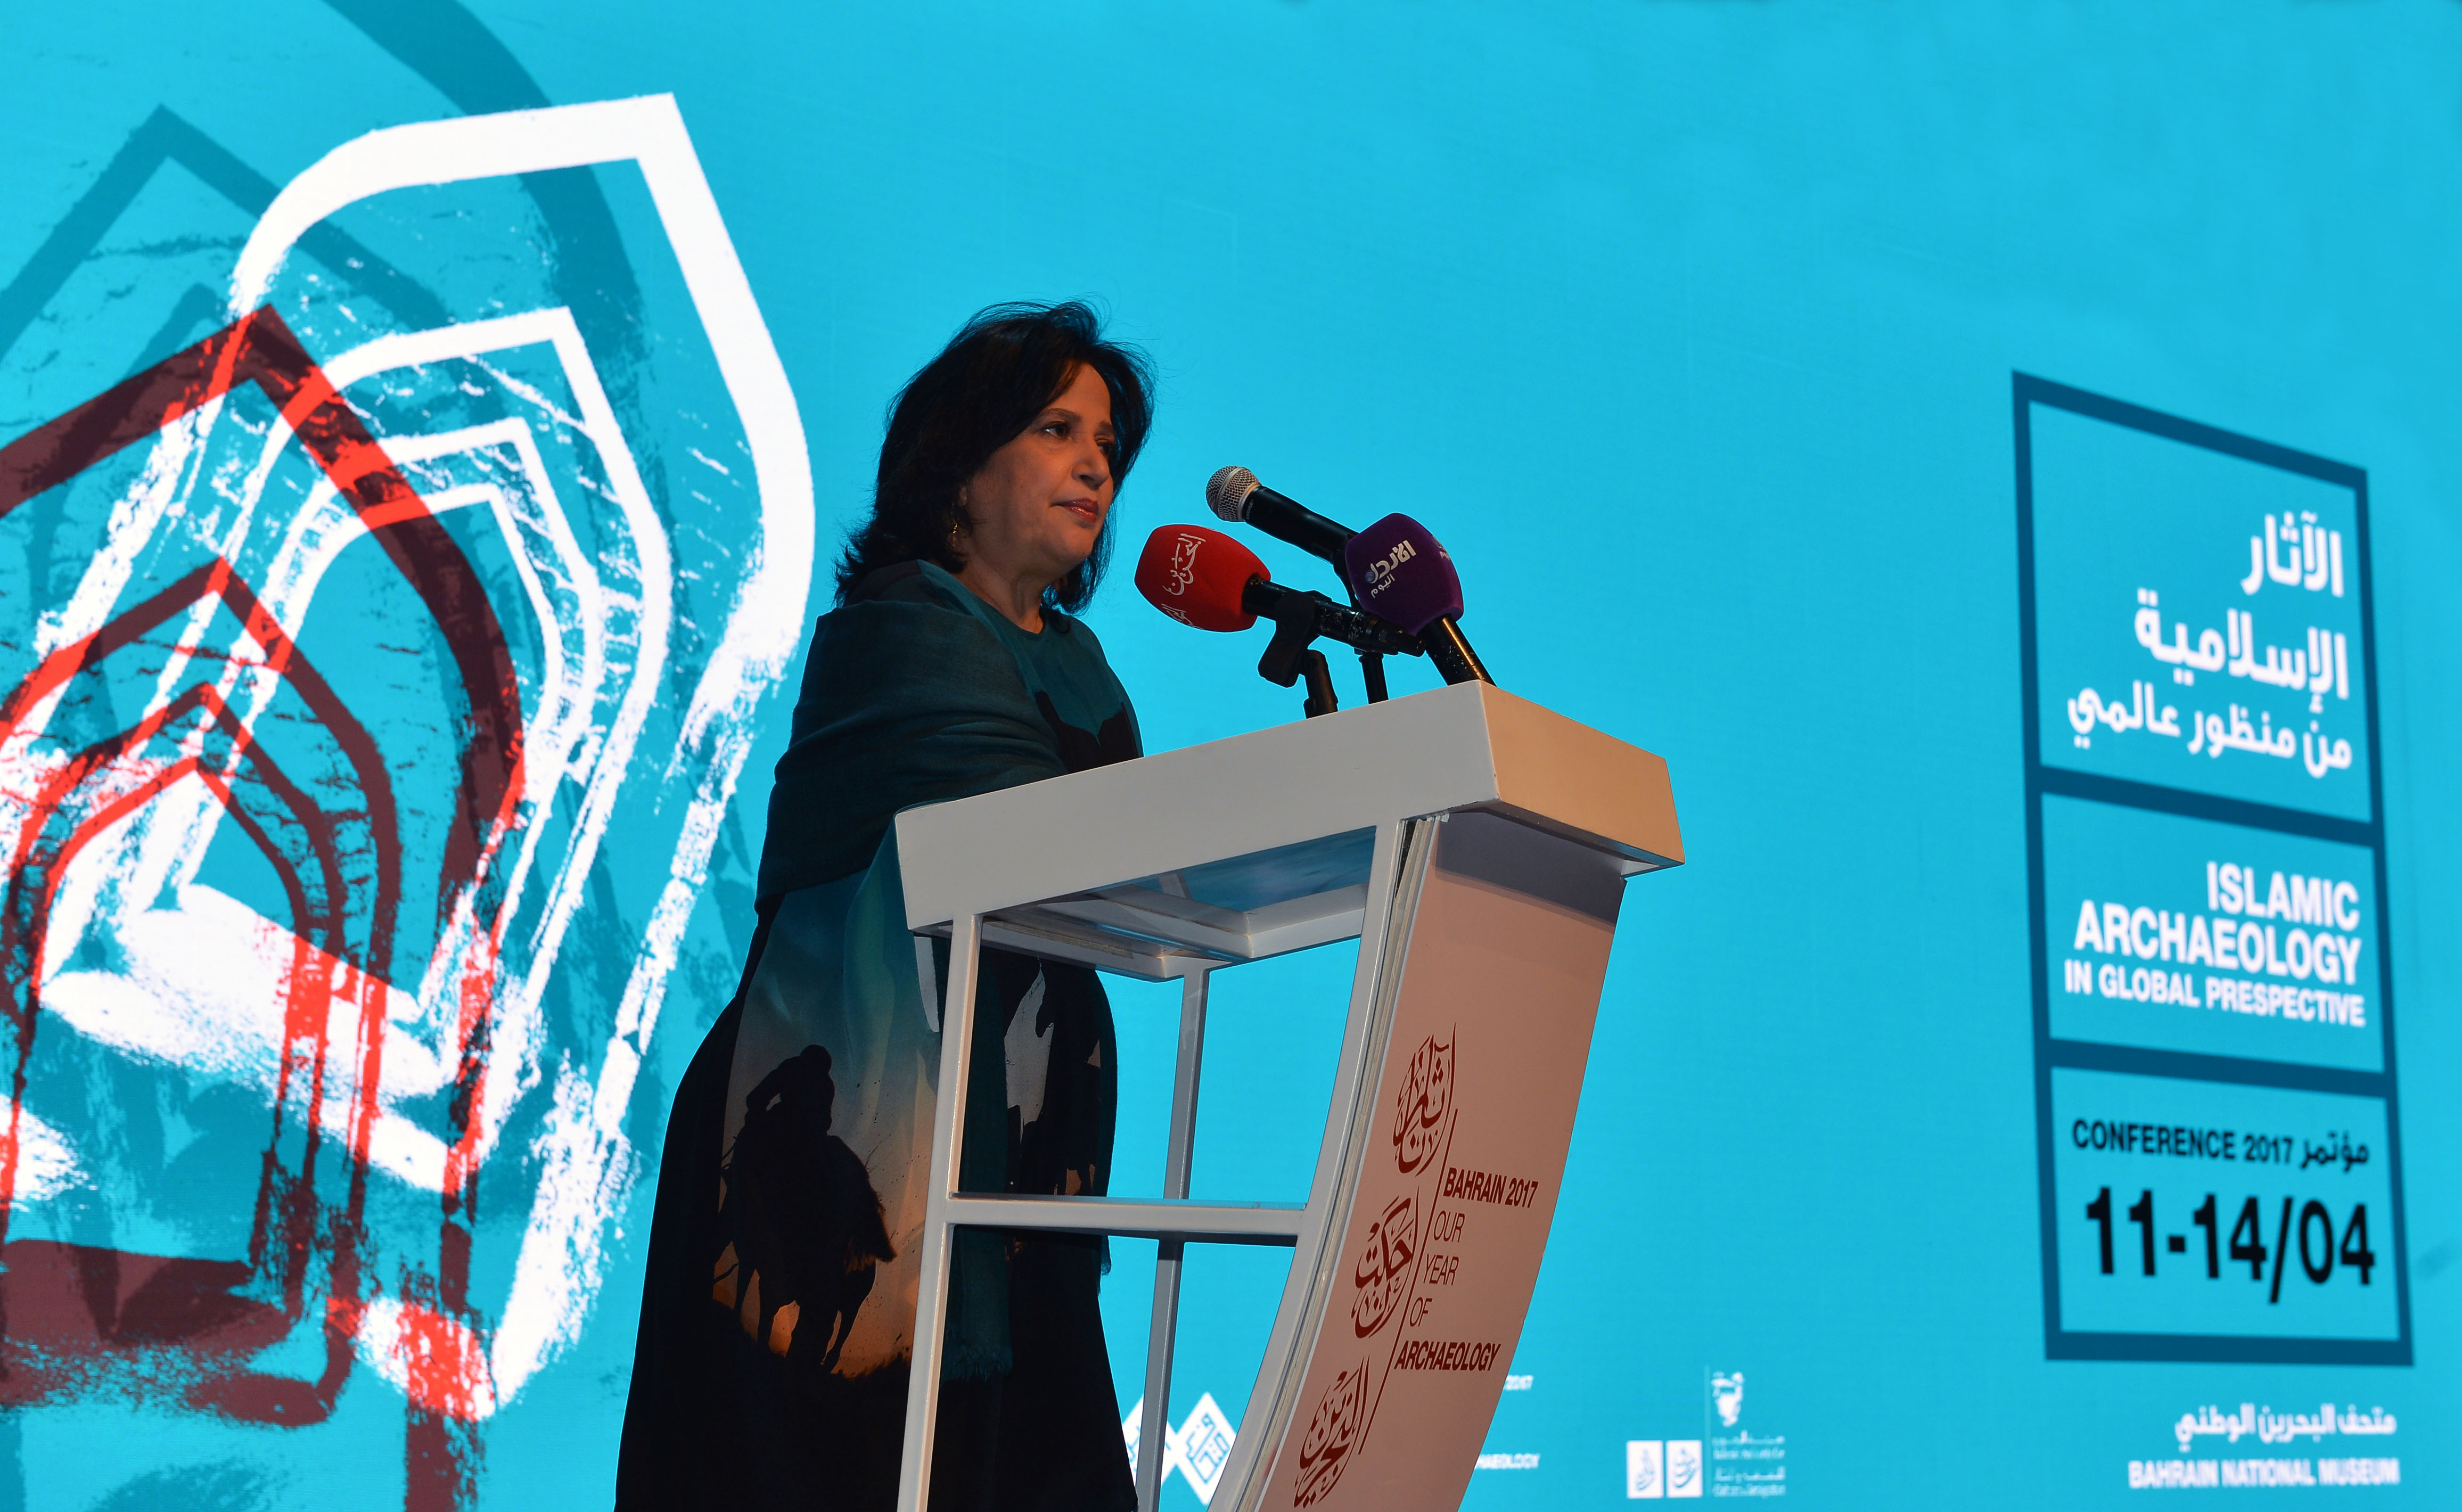 الشيخة مي بنت محمد آل خليفة في افتتاح مؤتمر الآثار الإسلامية من منظور عالمي في البحرين